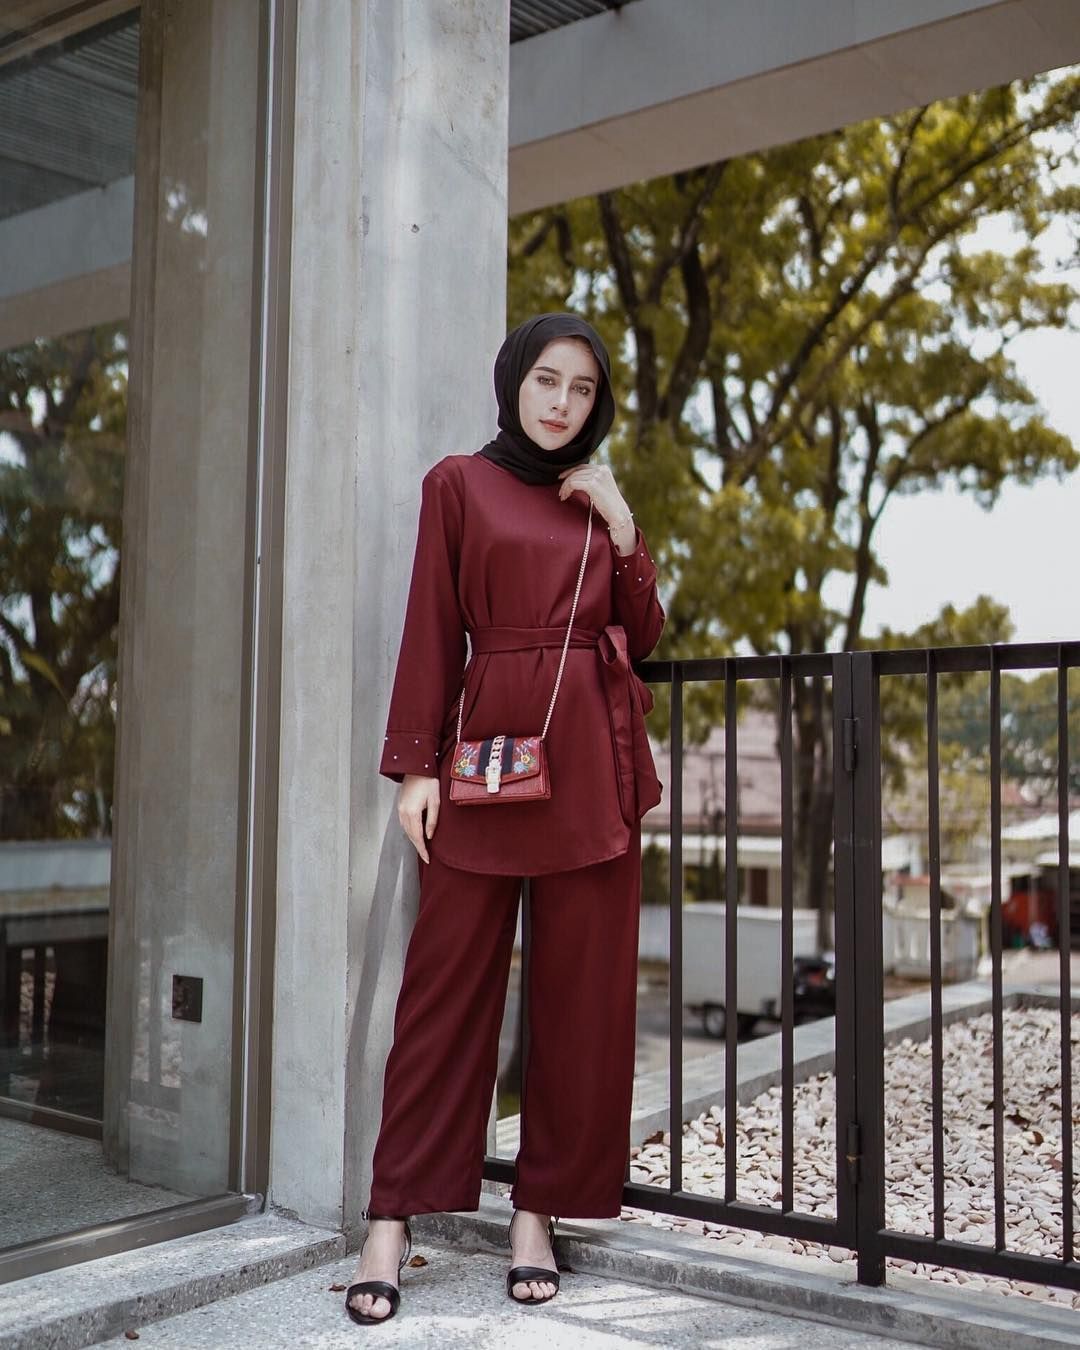 Rekomendasi Warna Hijab yang Cocok untuk Baju Merah Maroon